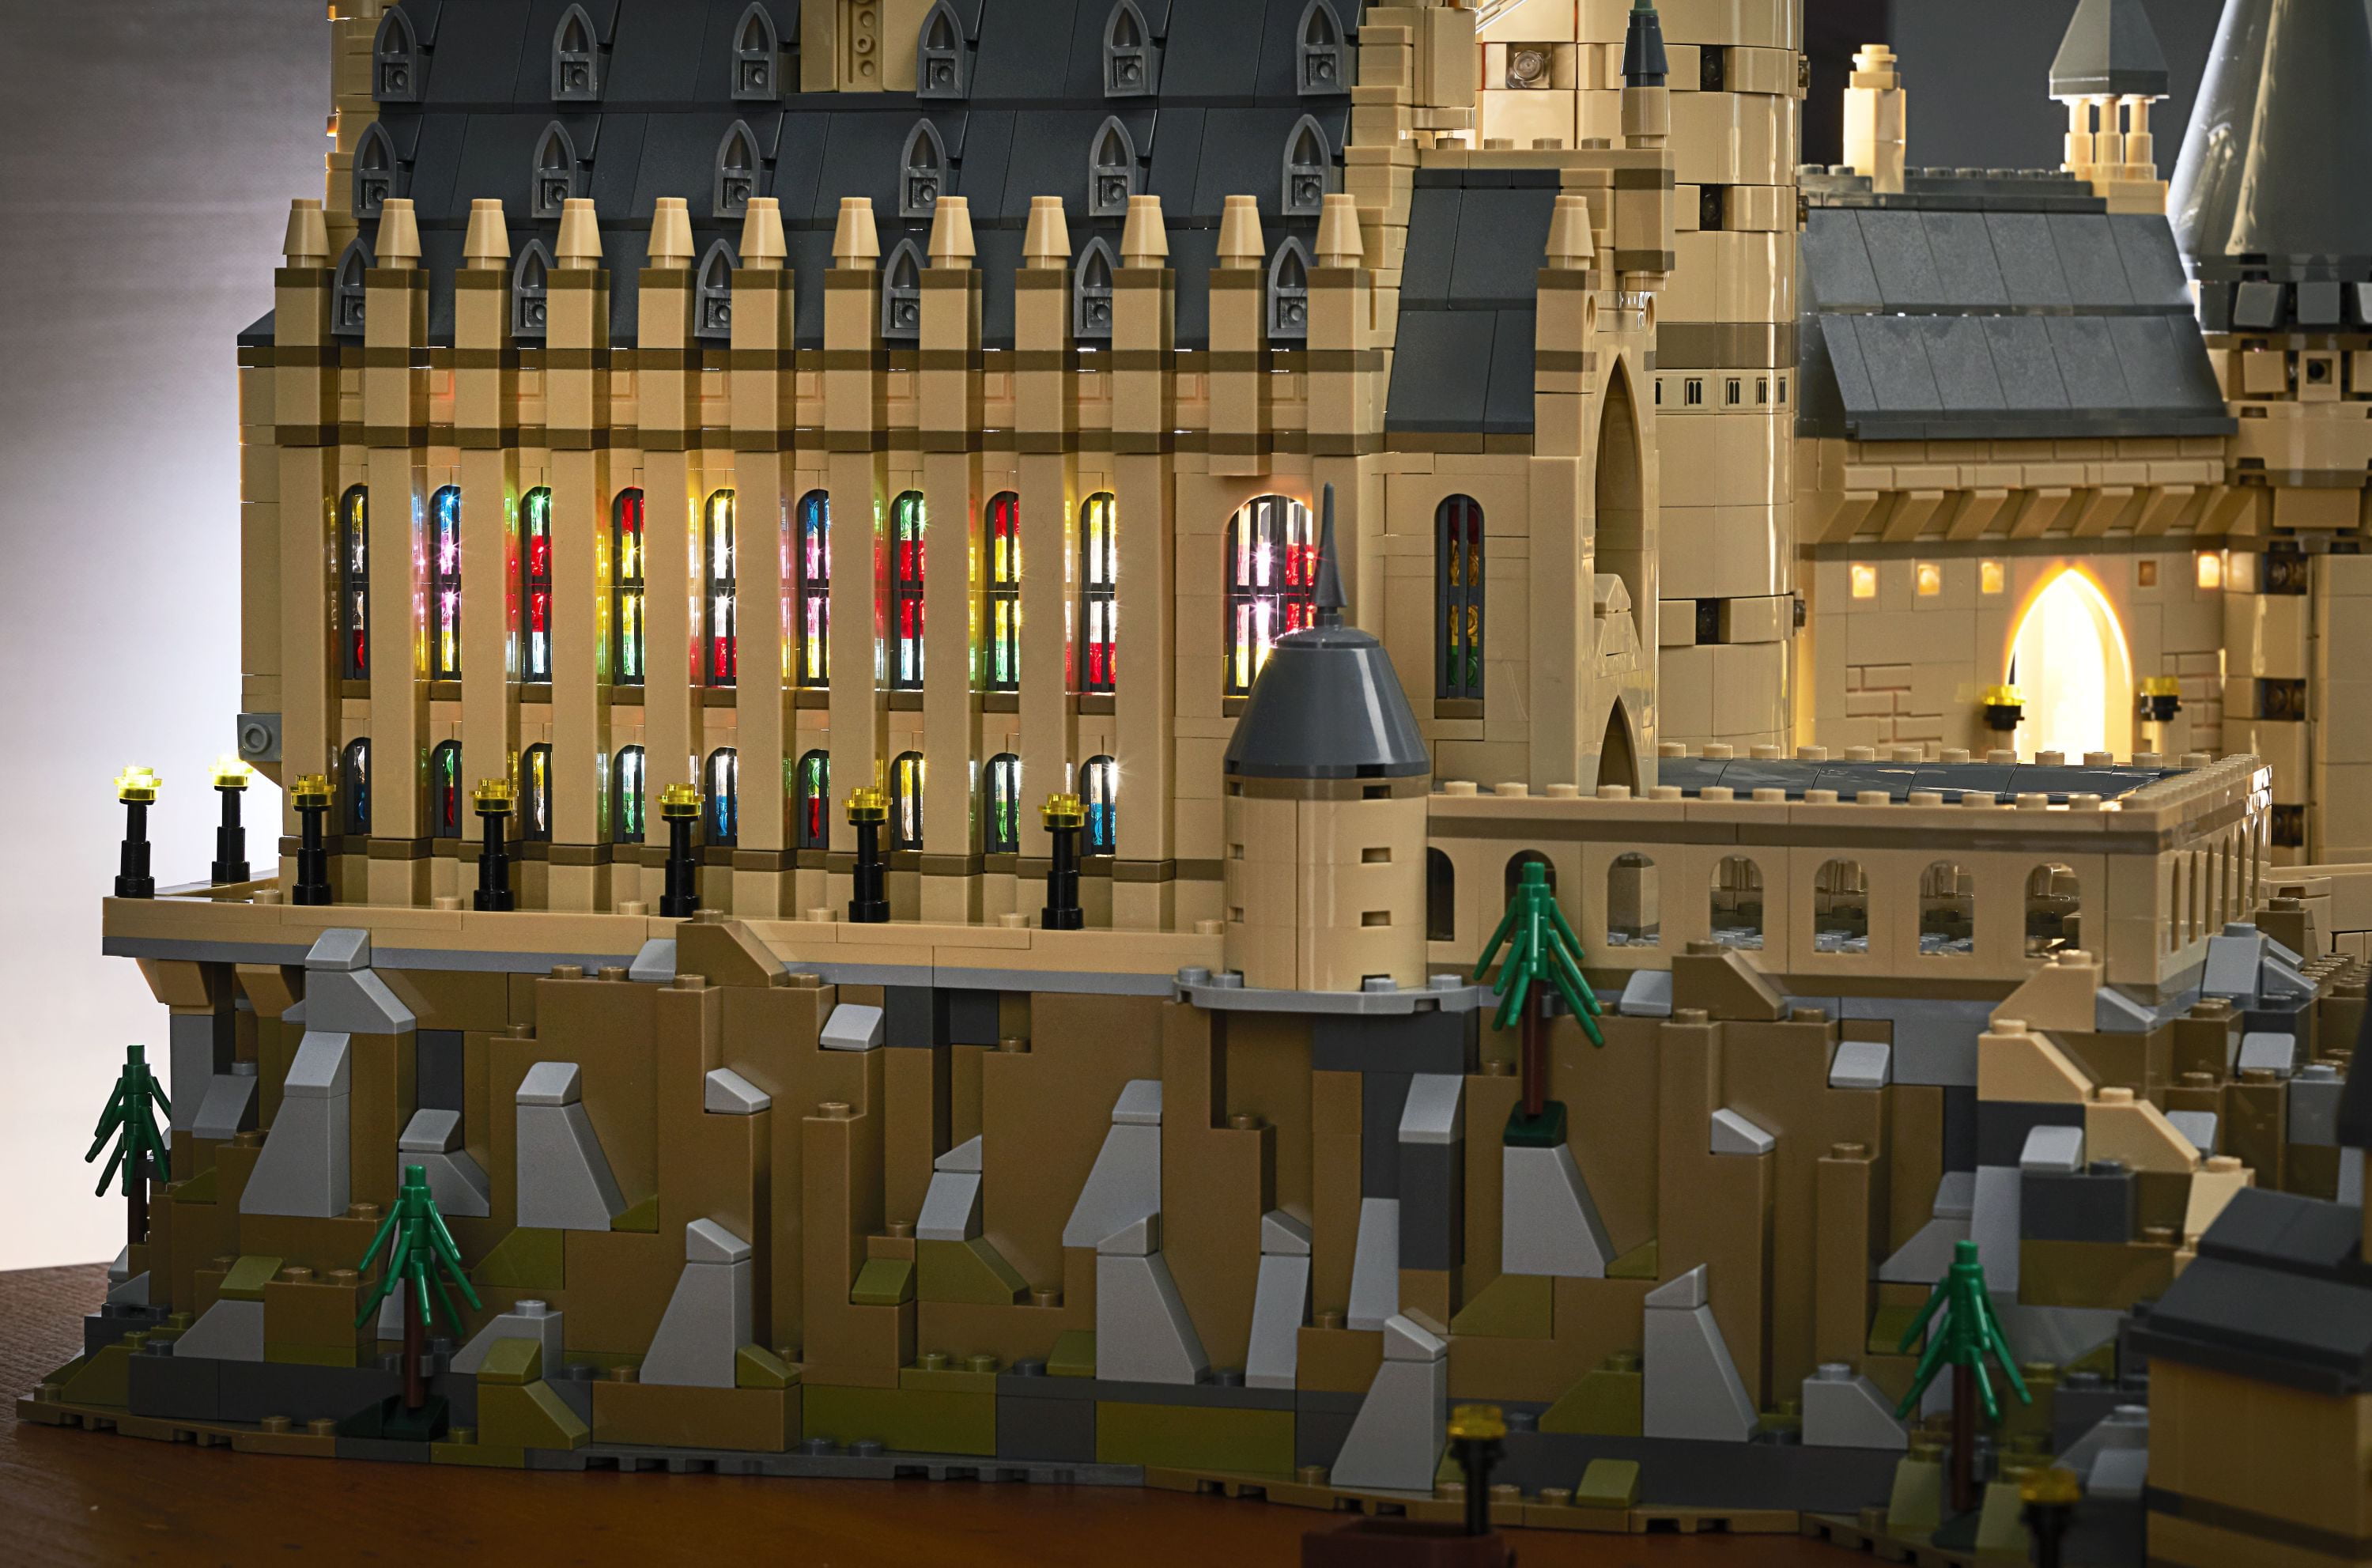 LEGO Harry Potter 71043 Château de Poudlard